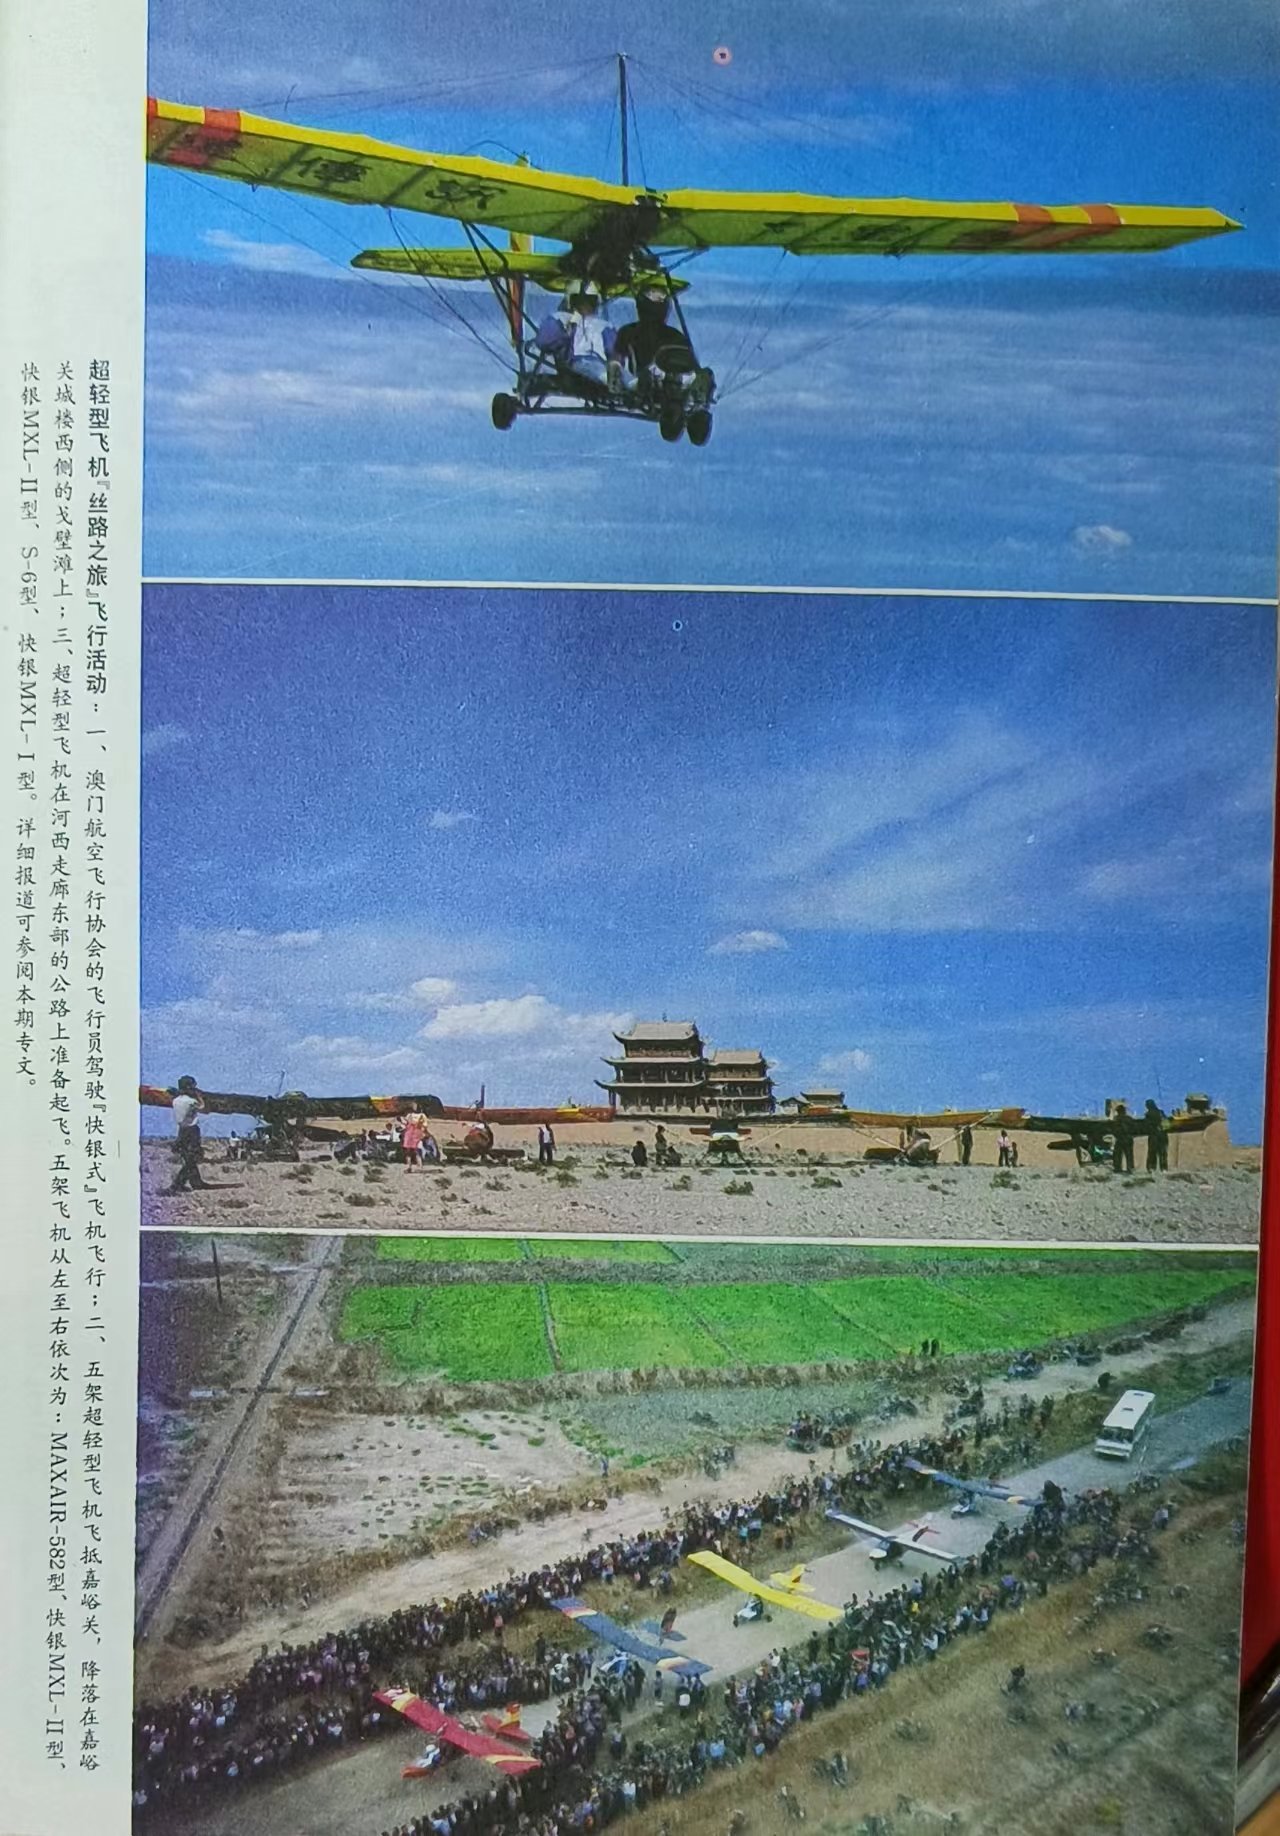 1993年丝绸之路“航空之旅”超轻型飞机(17563410)-20221024210238.jpg